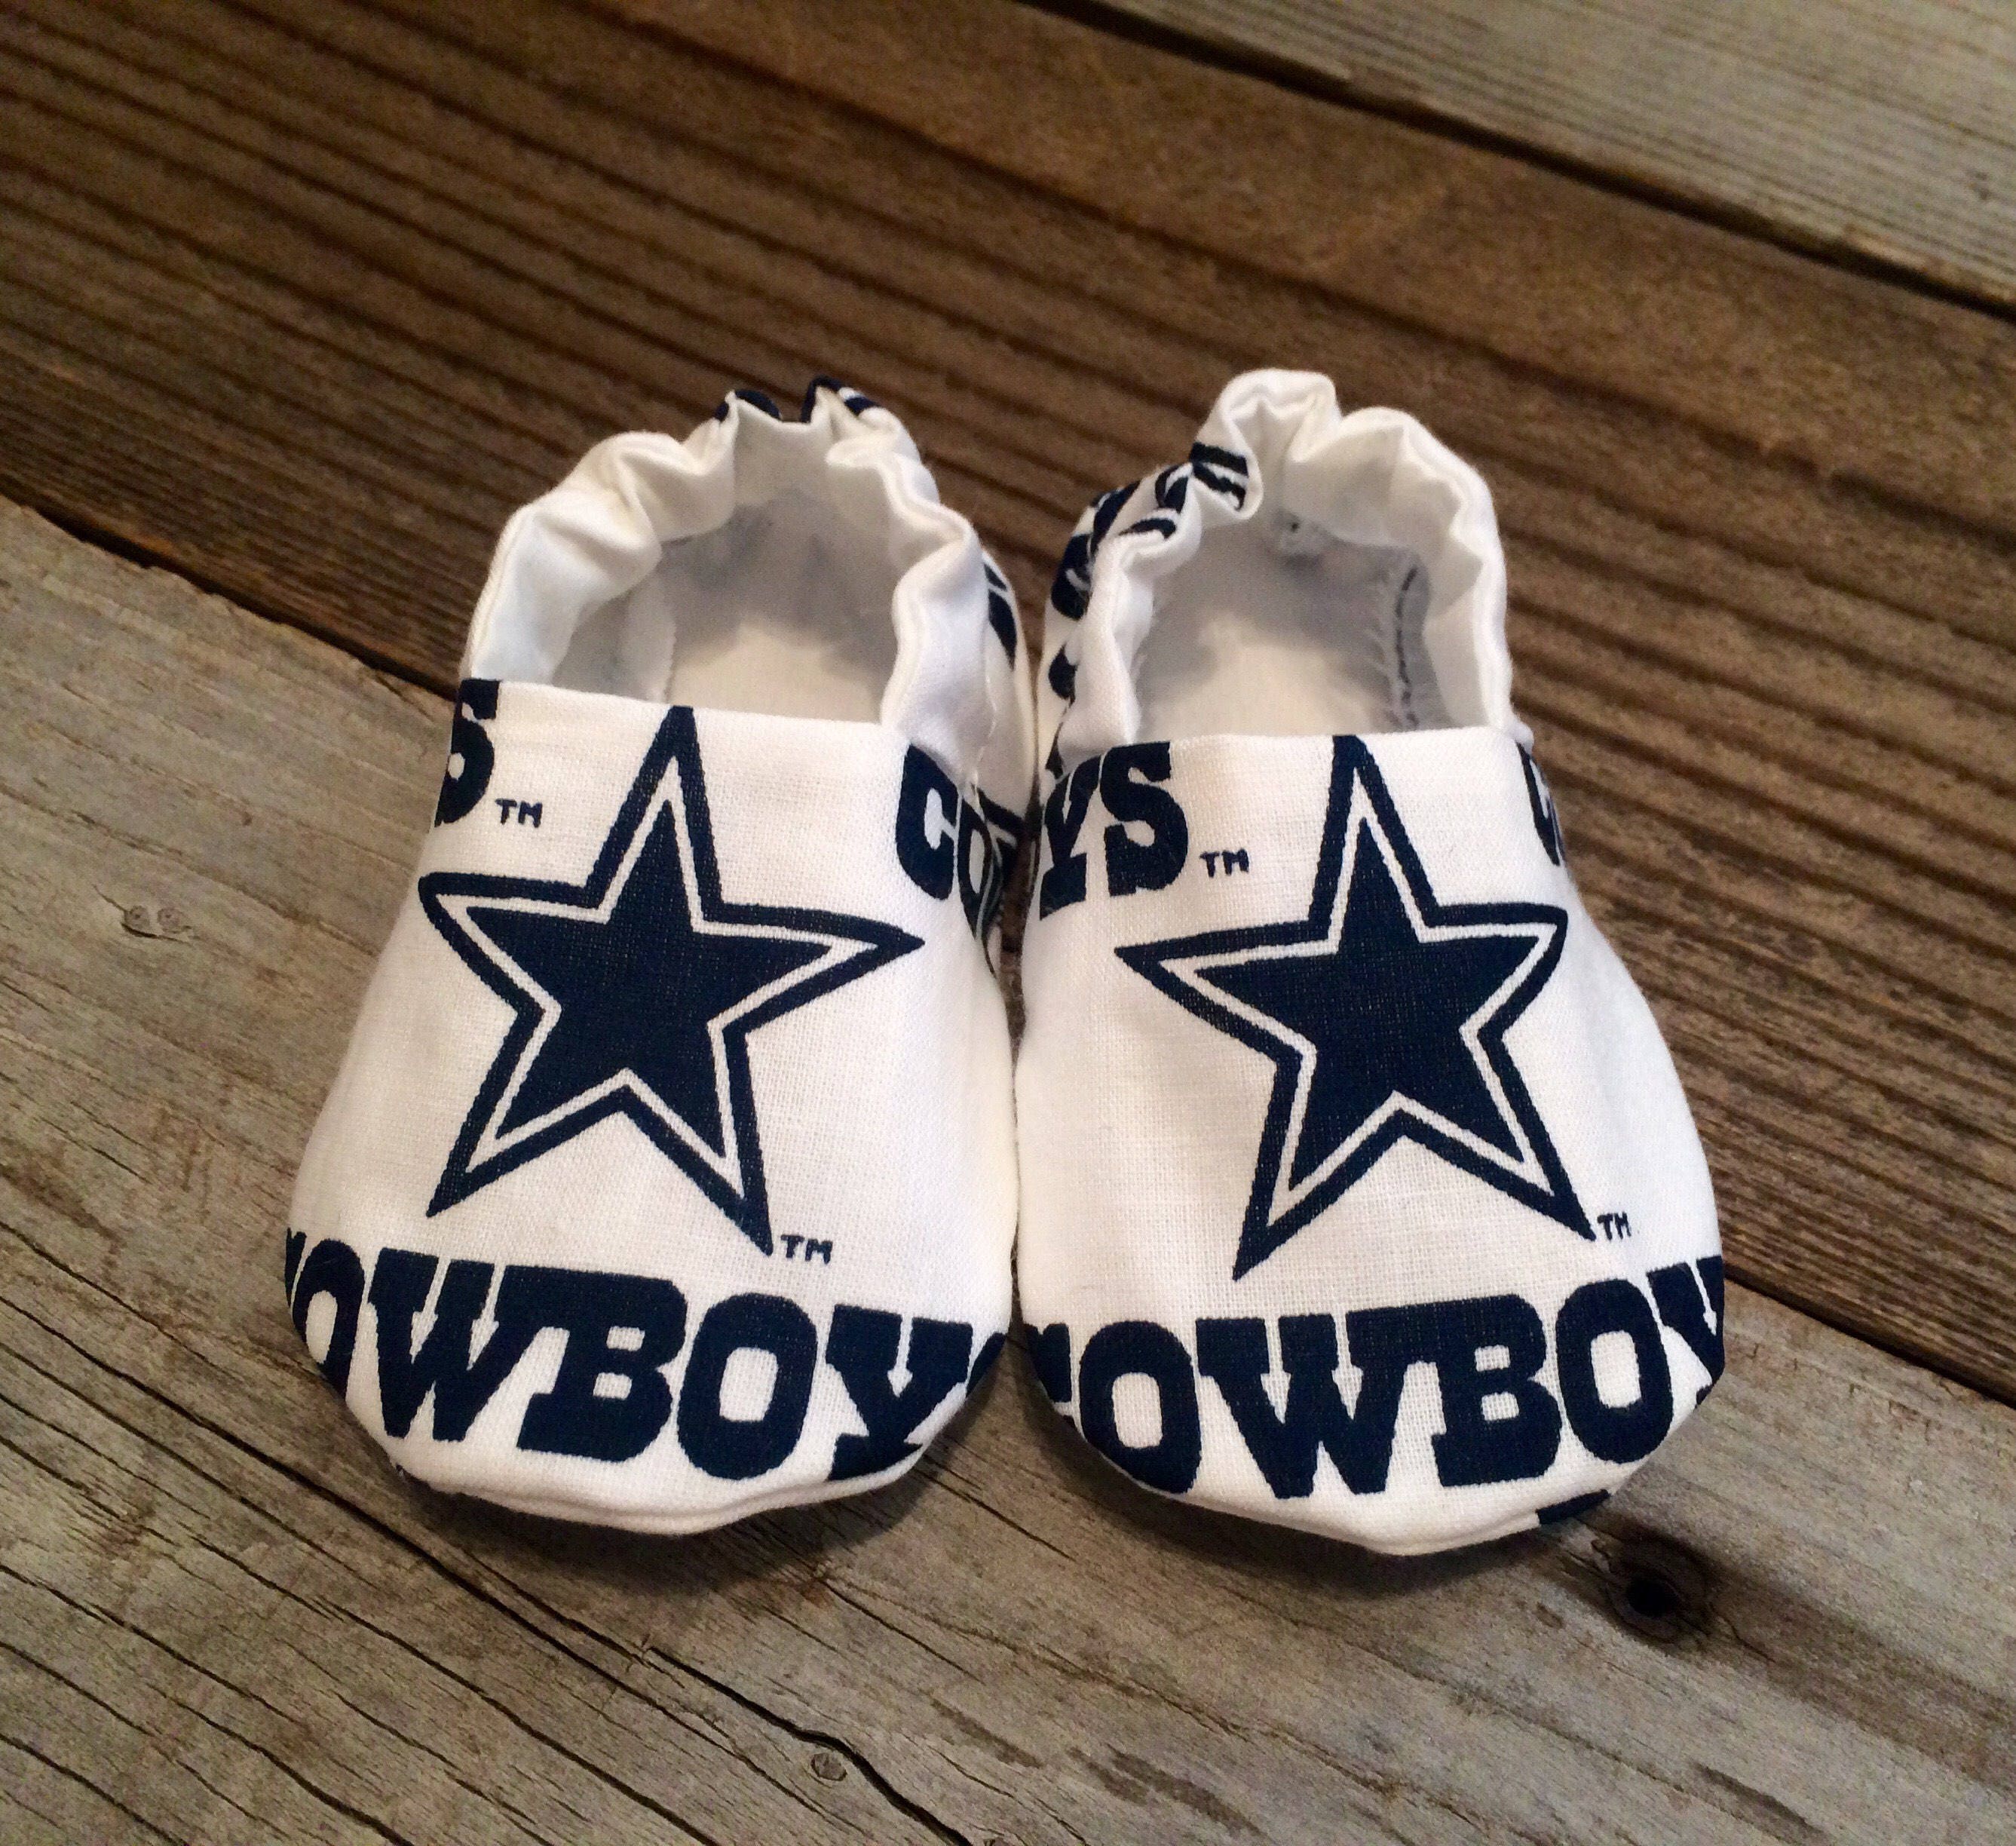 Dallas cowboys unisex baby booties cowboys baby shoes dallas